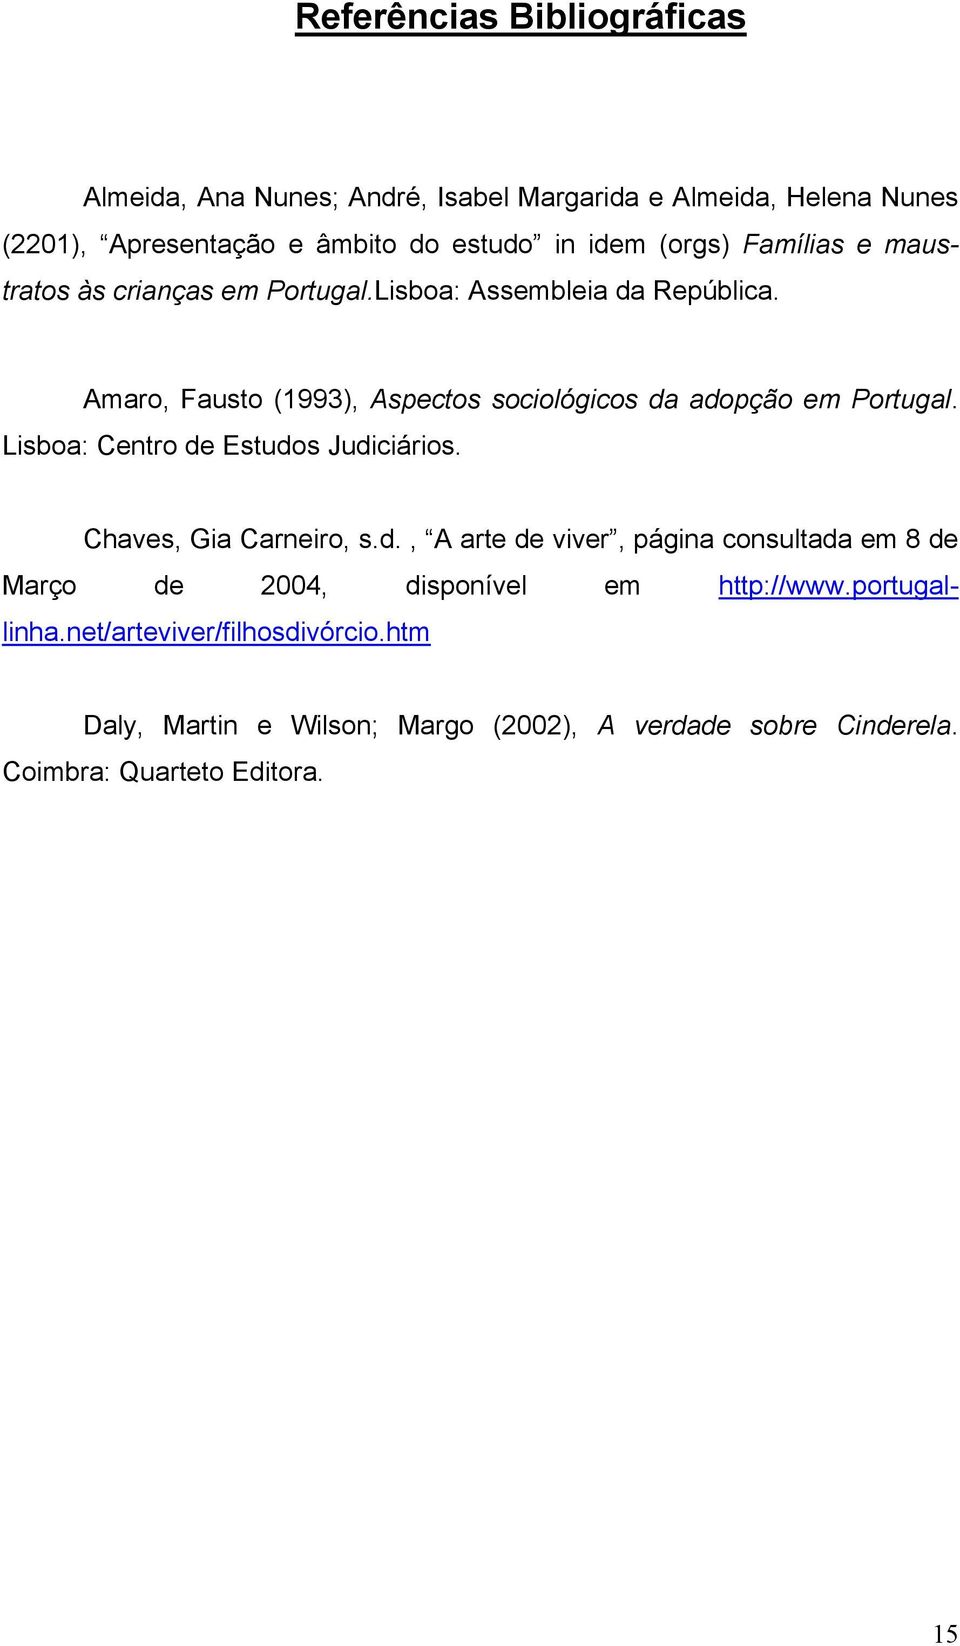 Amaro, Fausto (1993), Aspectos sociológicos da adopção em Portugal. Lisboa: Centro de Estudos Judiciários. Chaves, Gia Carneiro, s.d., A arte de viver, página consultada em 8 de Março de 2004, disponível em http://www.